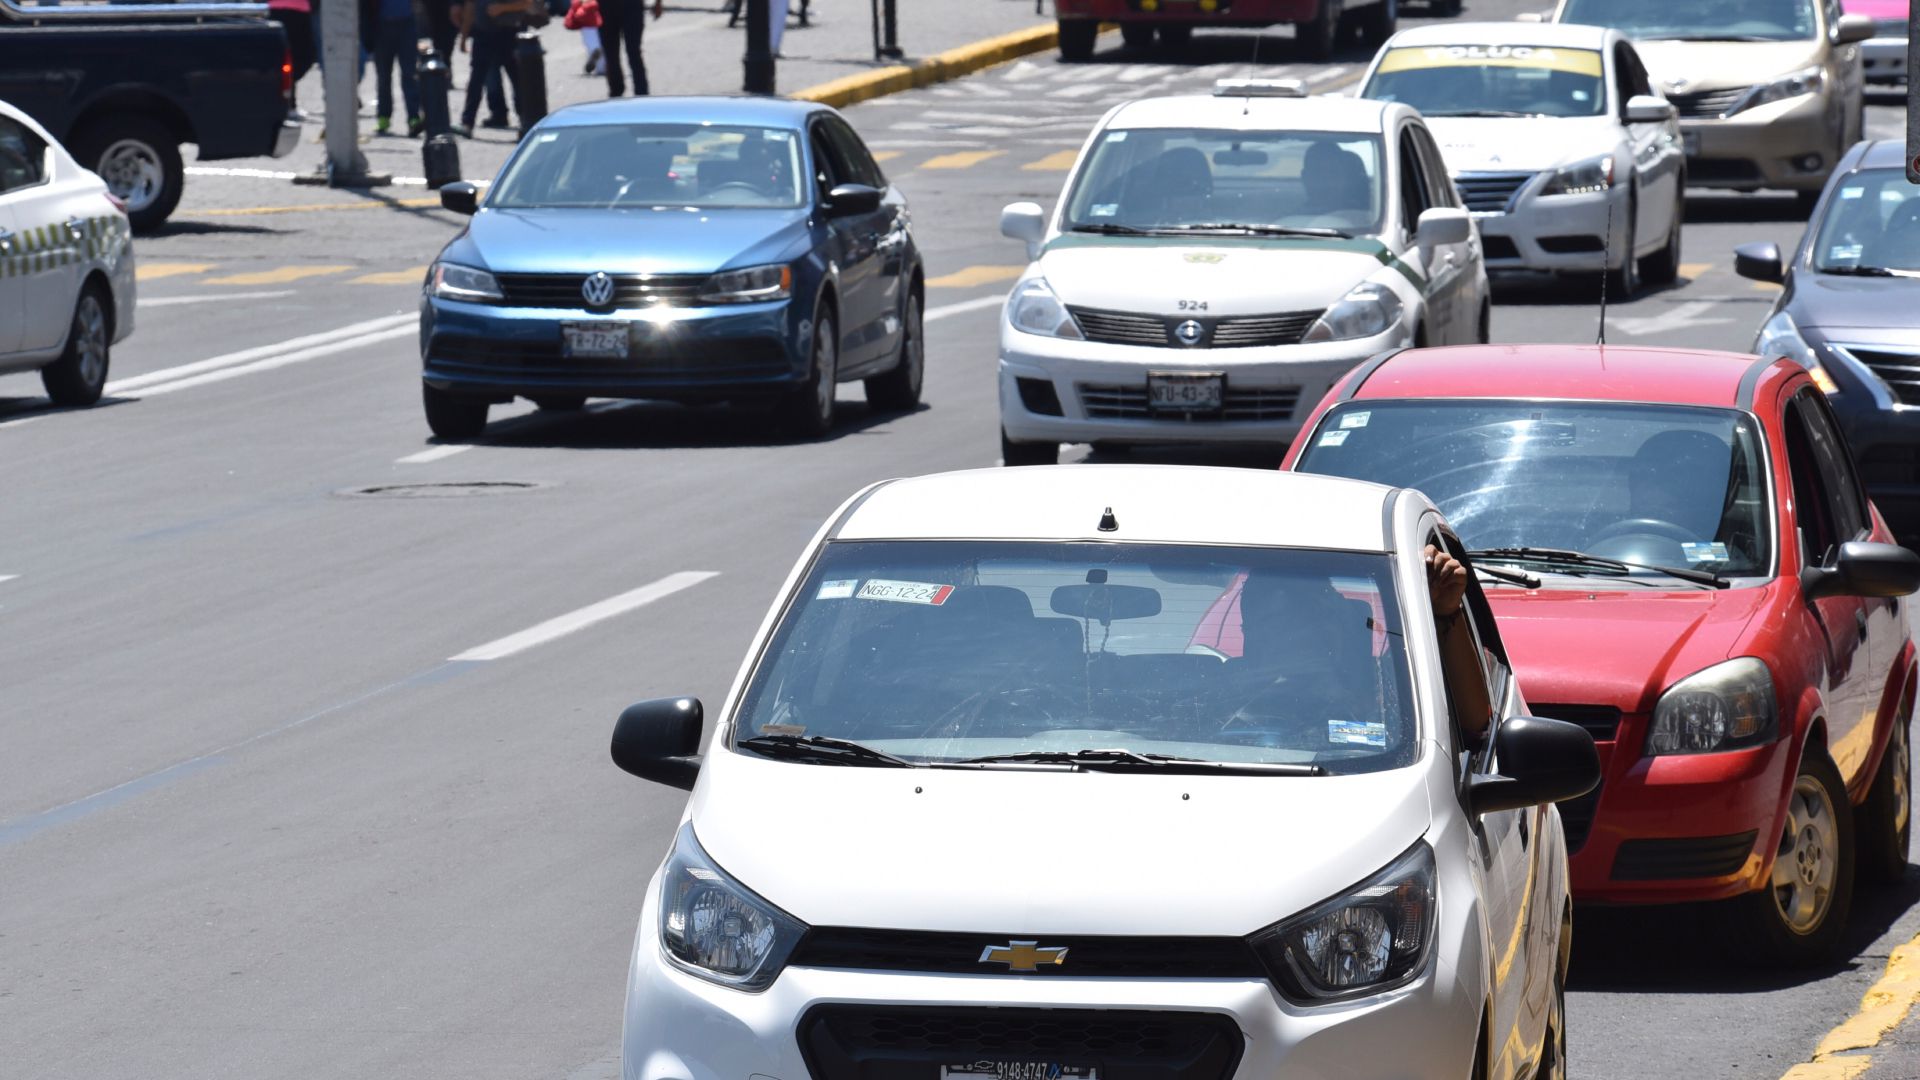 El robo de vehículos asegurados cayó un 1.7% en el último año (Foto: Crisanta Espinosa Aguilar/ Cuartoscuro)